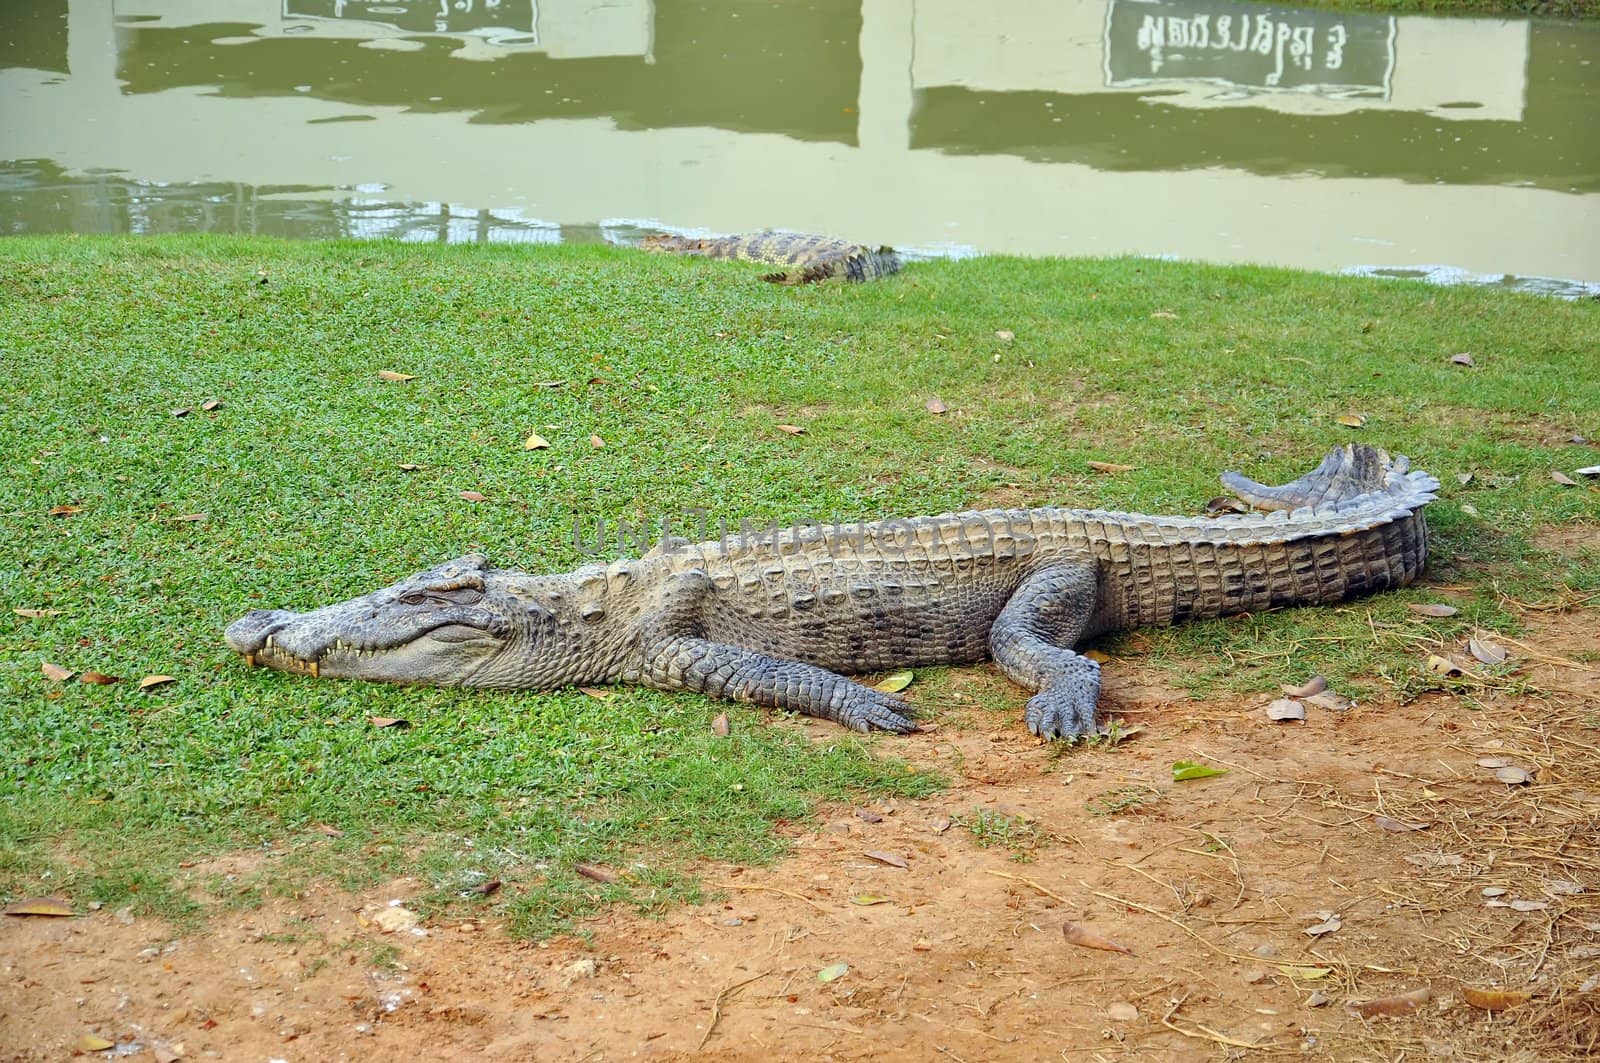 Crocodile by phanlop88